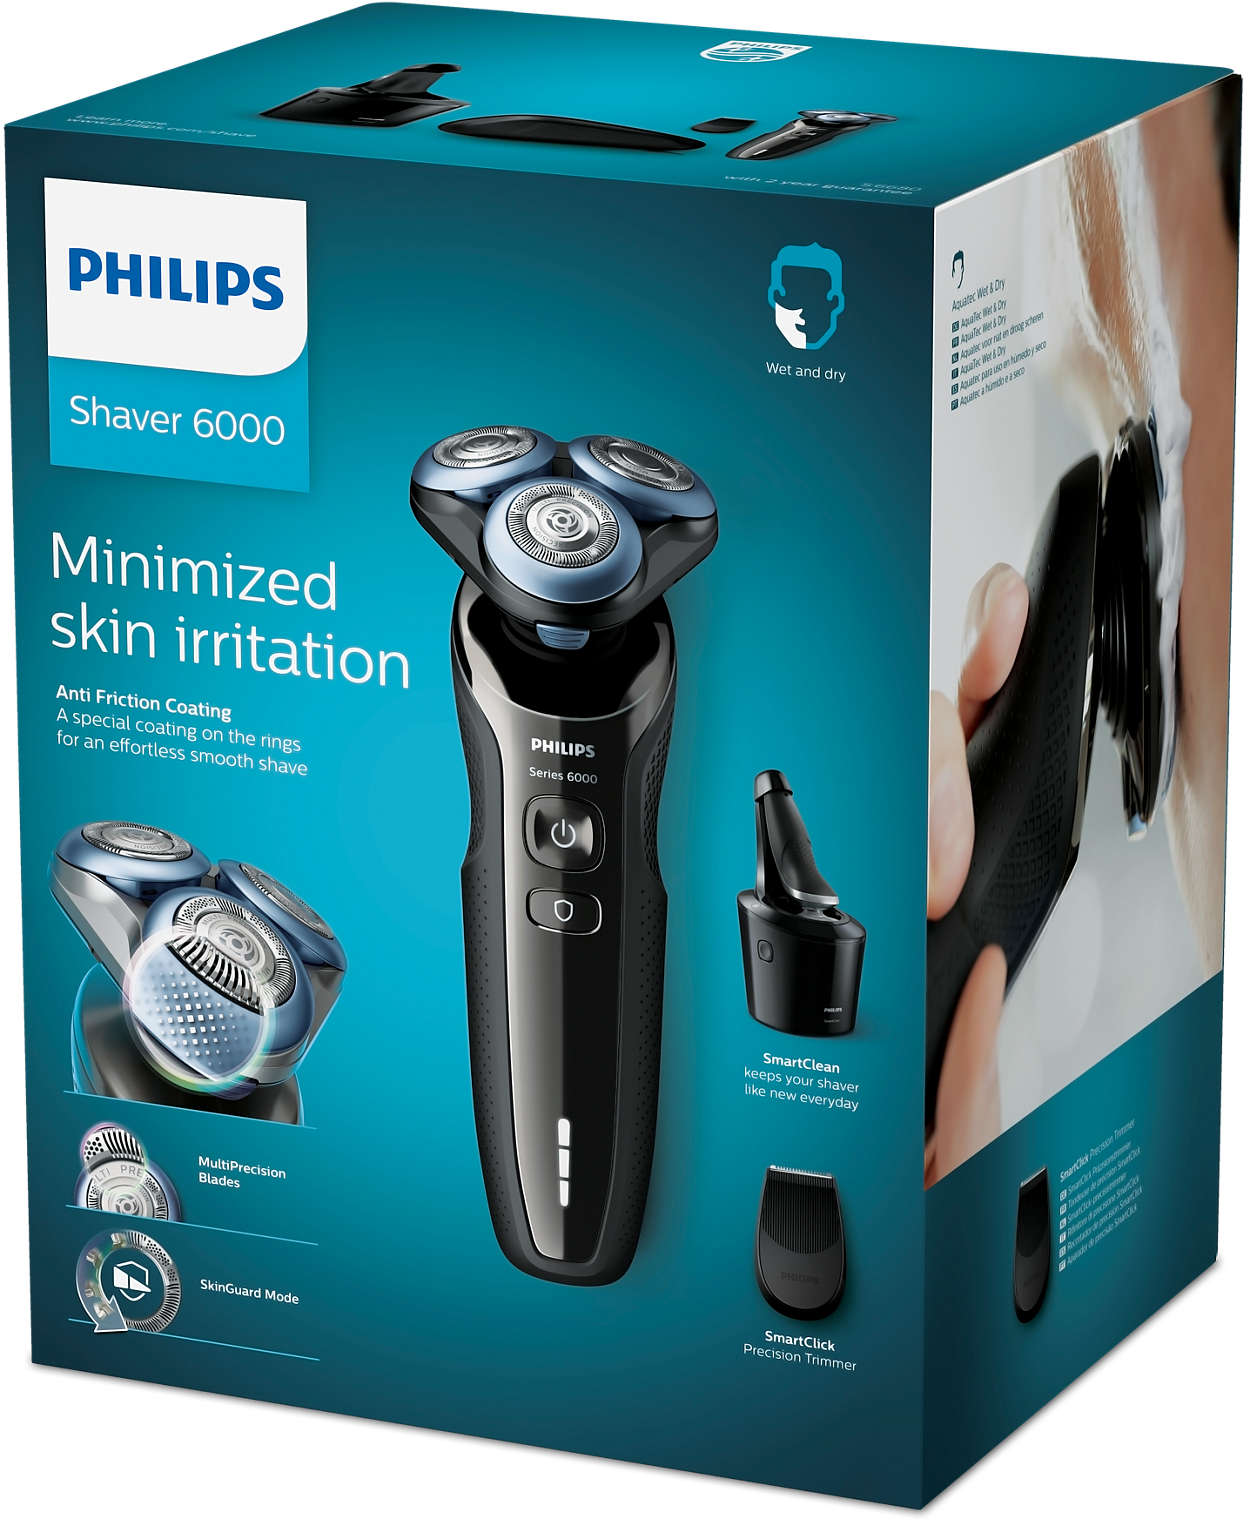 Филипс 6000. Philips s6000. Philips 6000 Series. Электробритва Филипс 6000. Philips Shaver Series 6000.